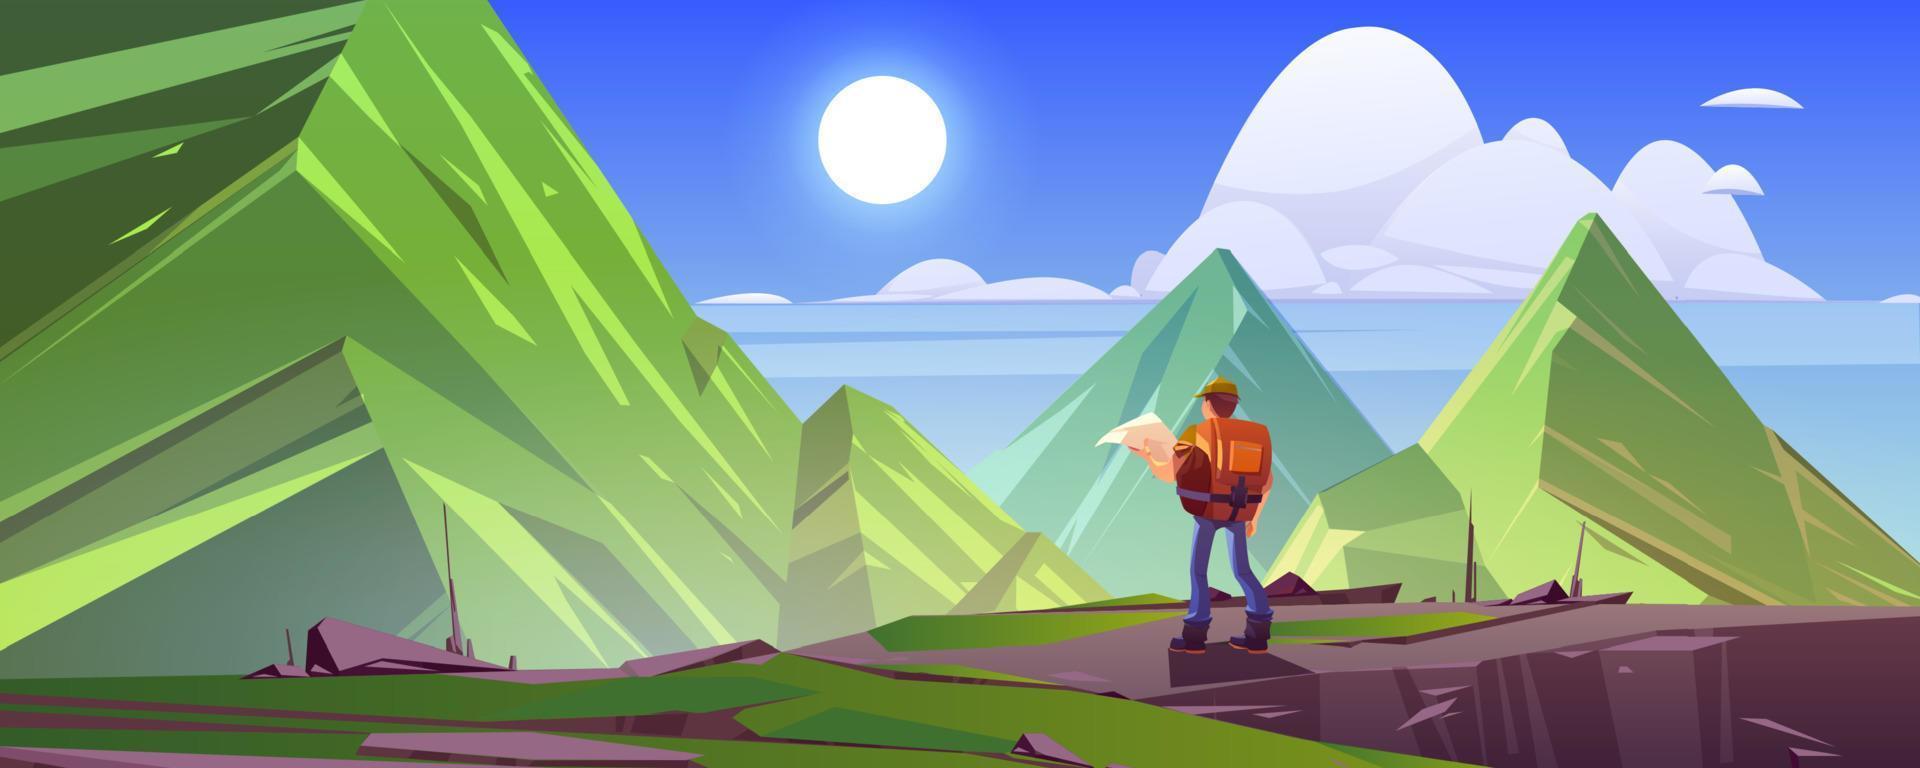 montagna paesaggio con escursionista uomo con carta geografica vettore